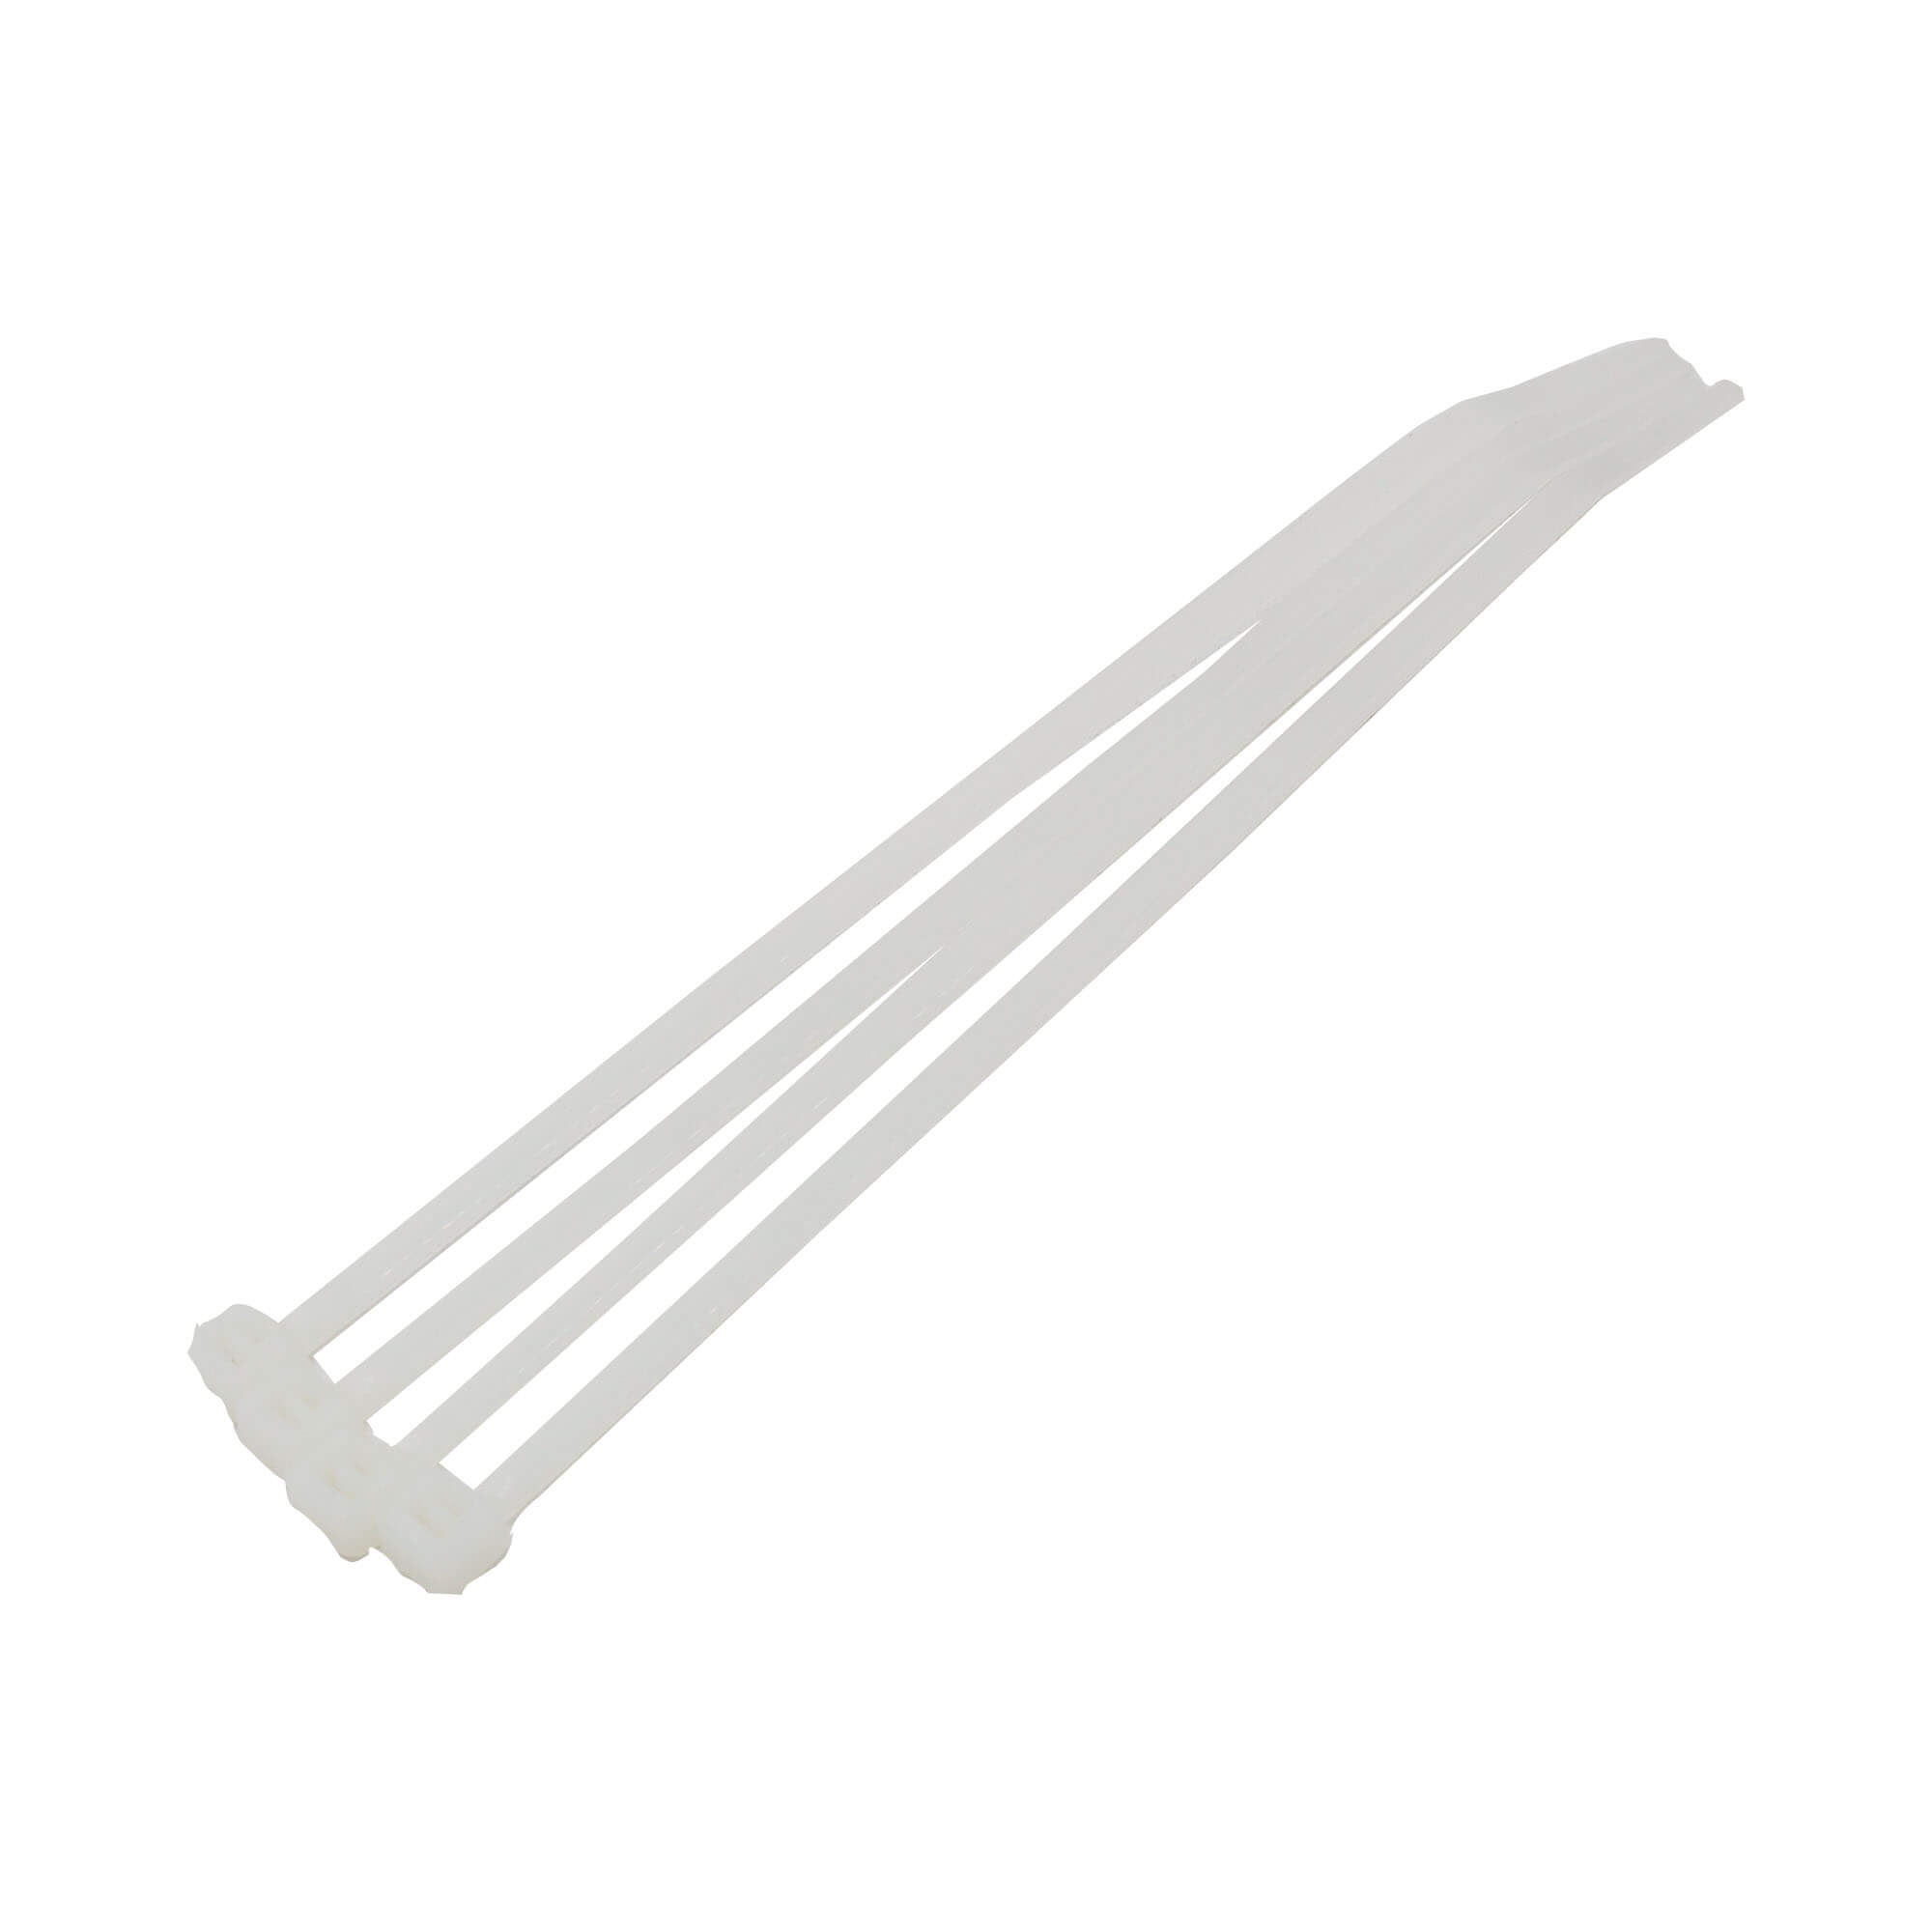 Coliere plastic albe 4,8X380mm